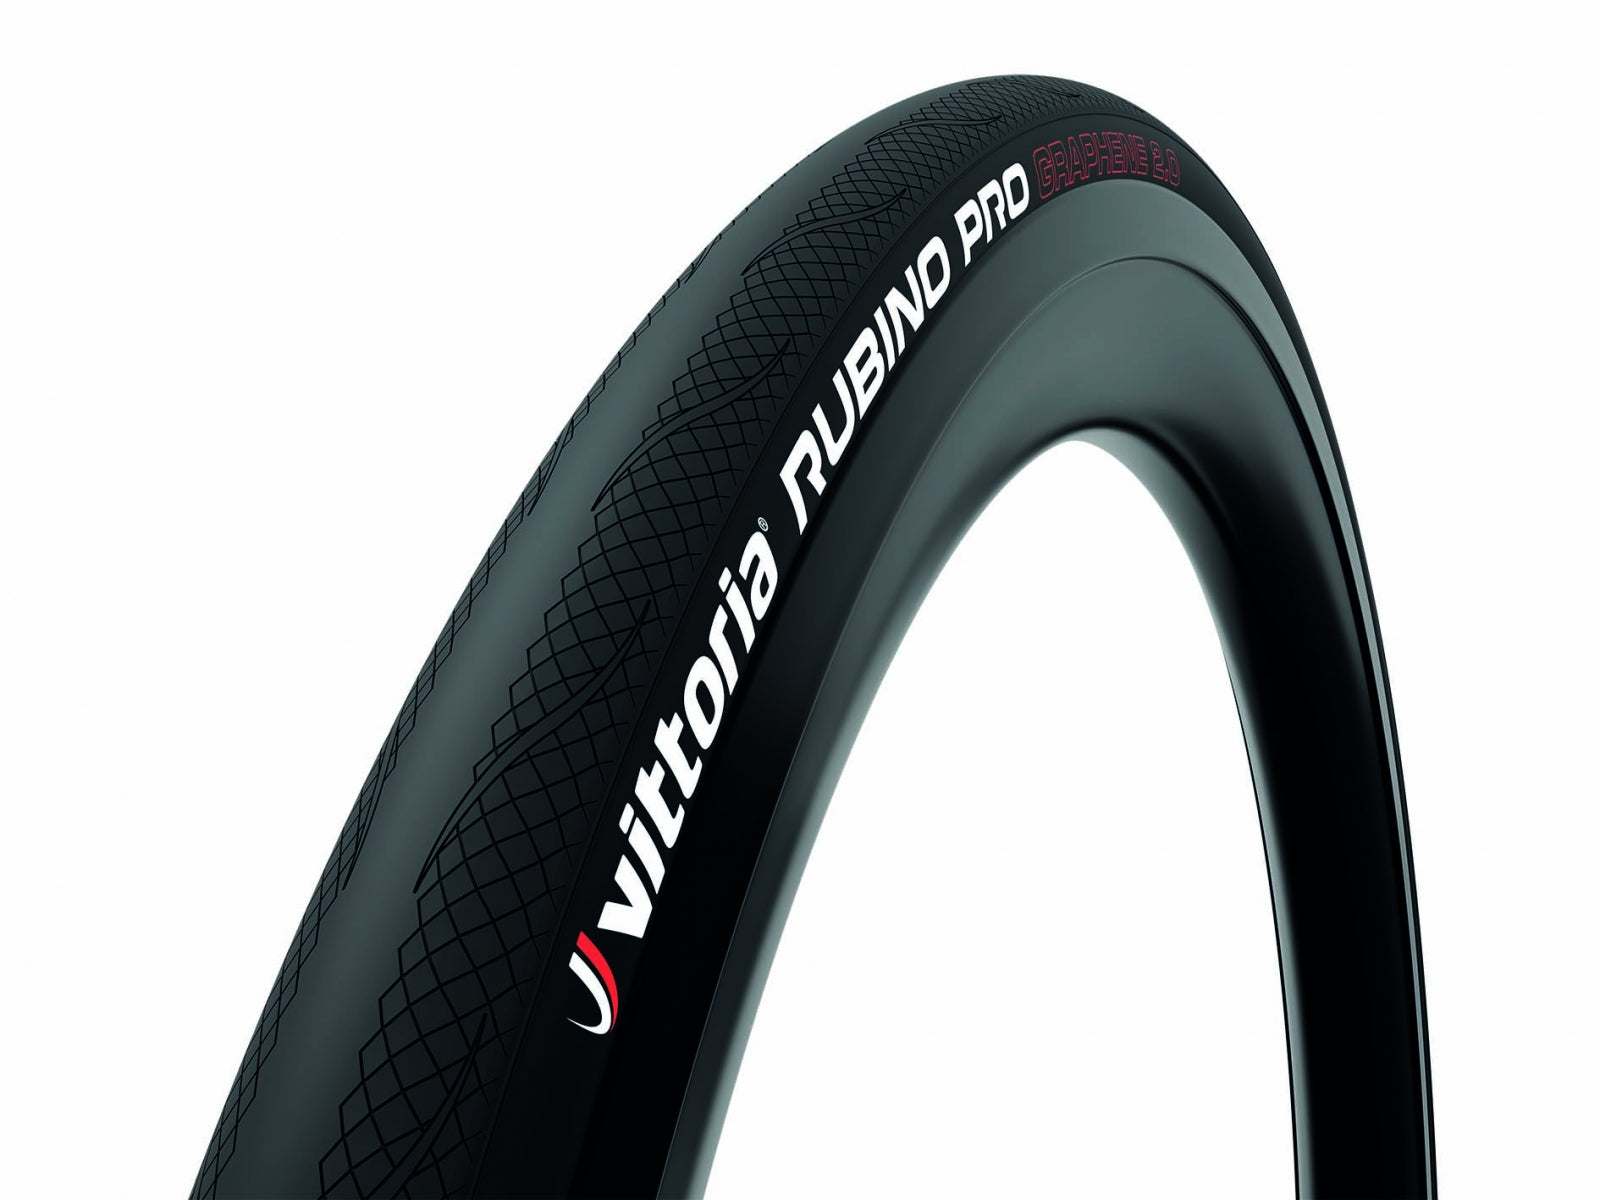 Vittoria Rubino Pro Graphene 2.0 road bike tire